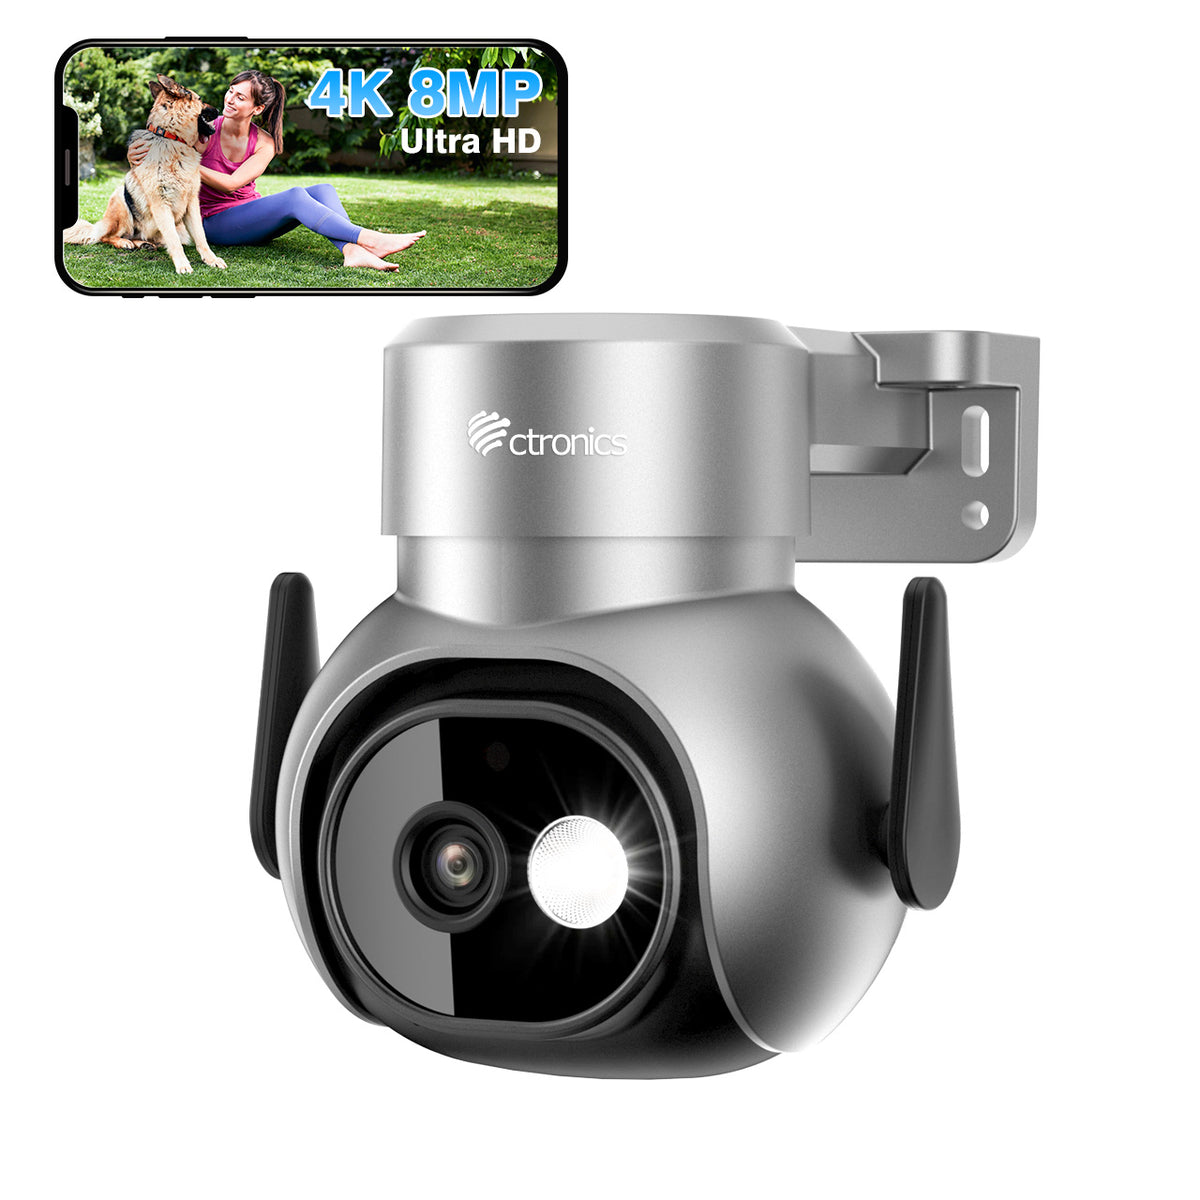 Caméra de Surveillance WiFi extérieure 4K 8MP avec projecteur, caméra PTZ WiFi 2.4/5Ghz, détection humaine/animal/véhicule